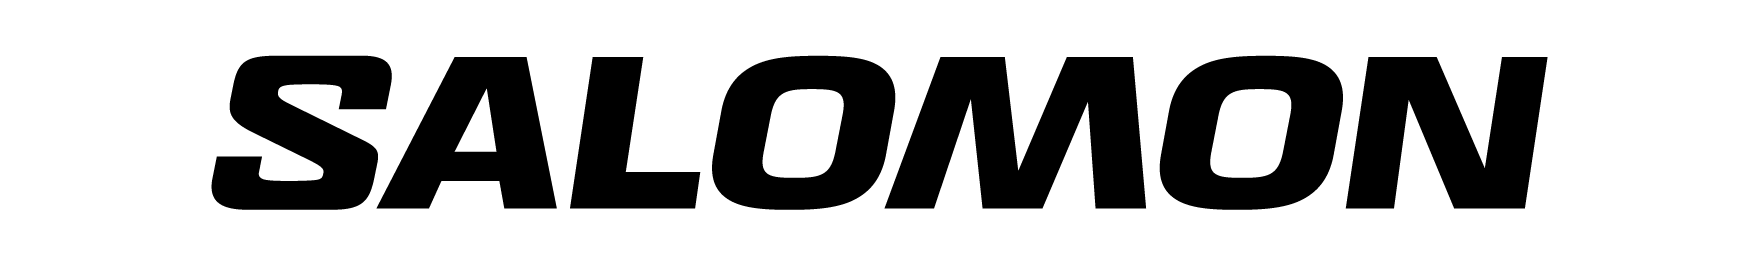 SALOMON BRANDMARK 22 - Lang logo